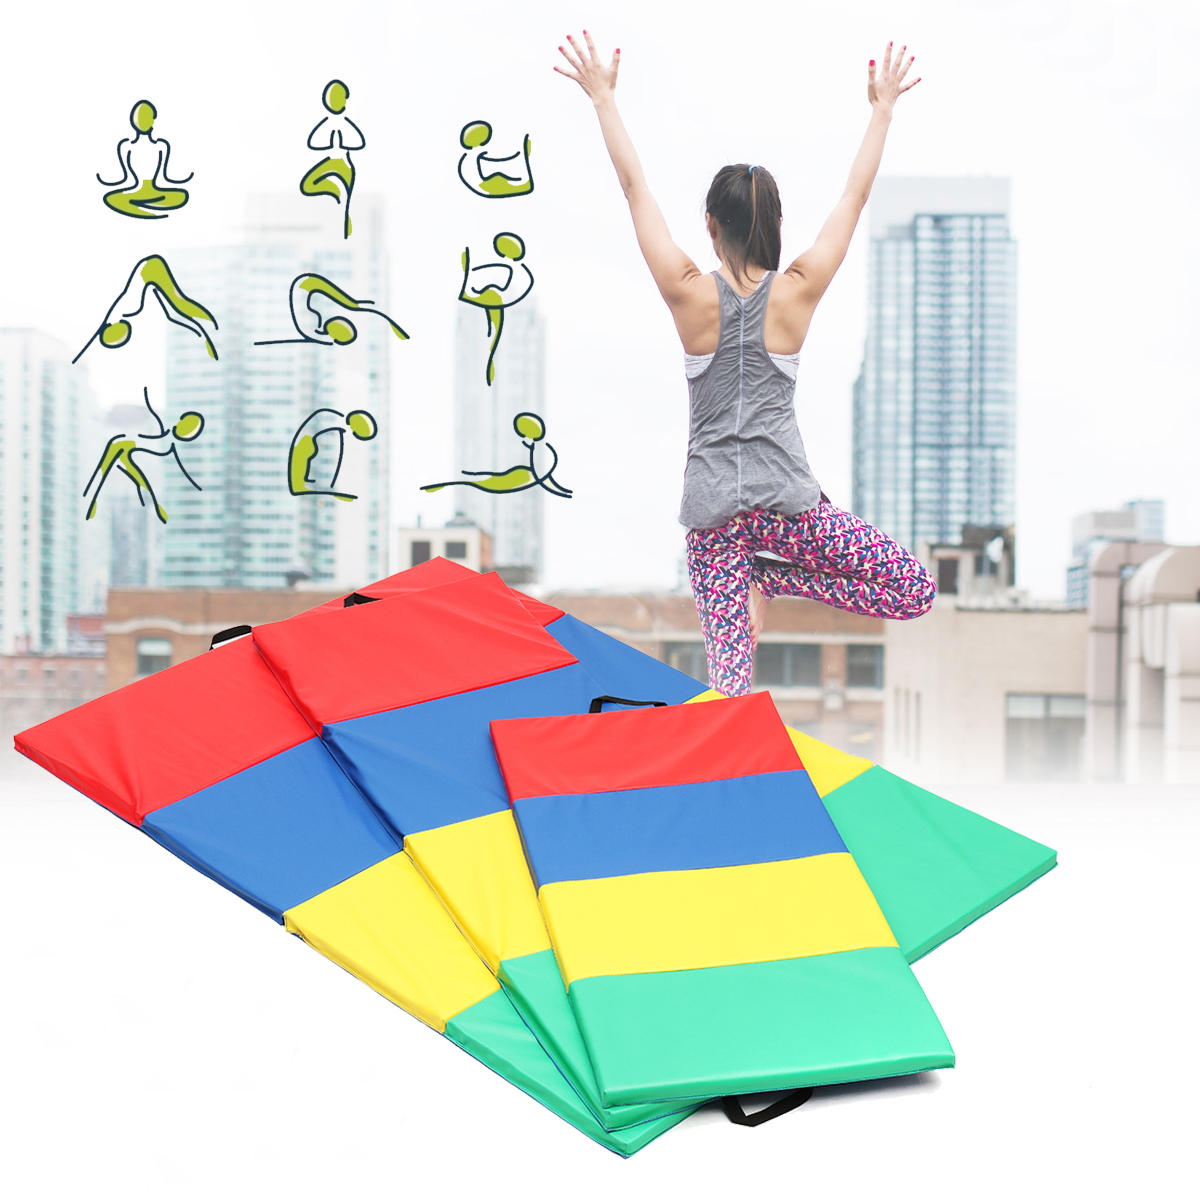 4 αναδιπλούμενα γυμναστικά χαλιά για γιόγκα, ασκήσεις στο γυμναστήριο, πάνελ αεροδρομίου για tumbling, αναρρίχηση και pilates